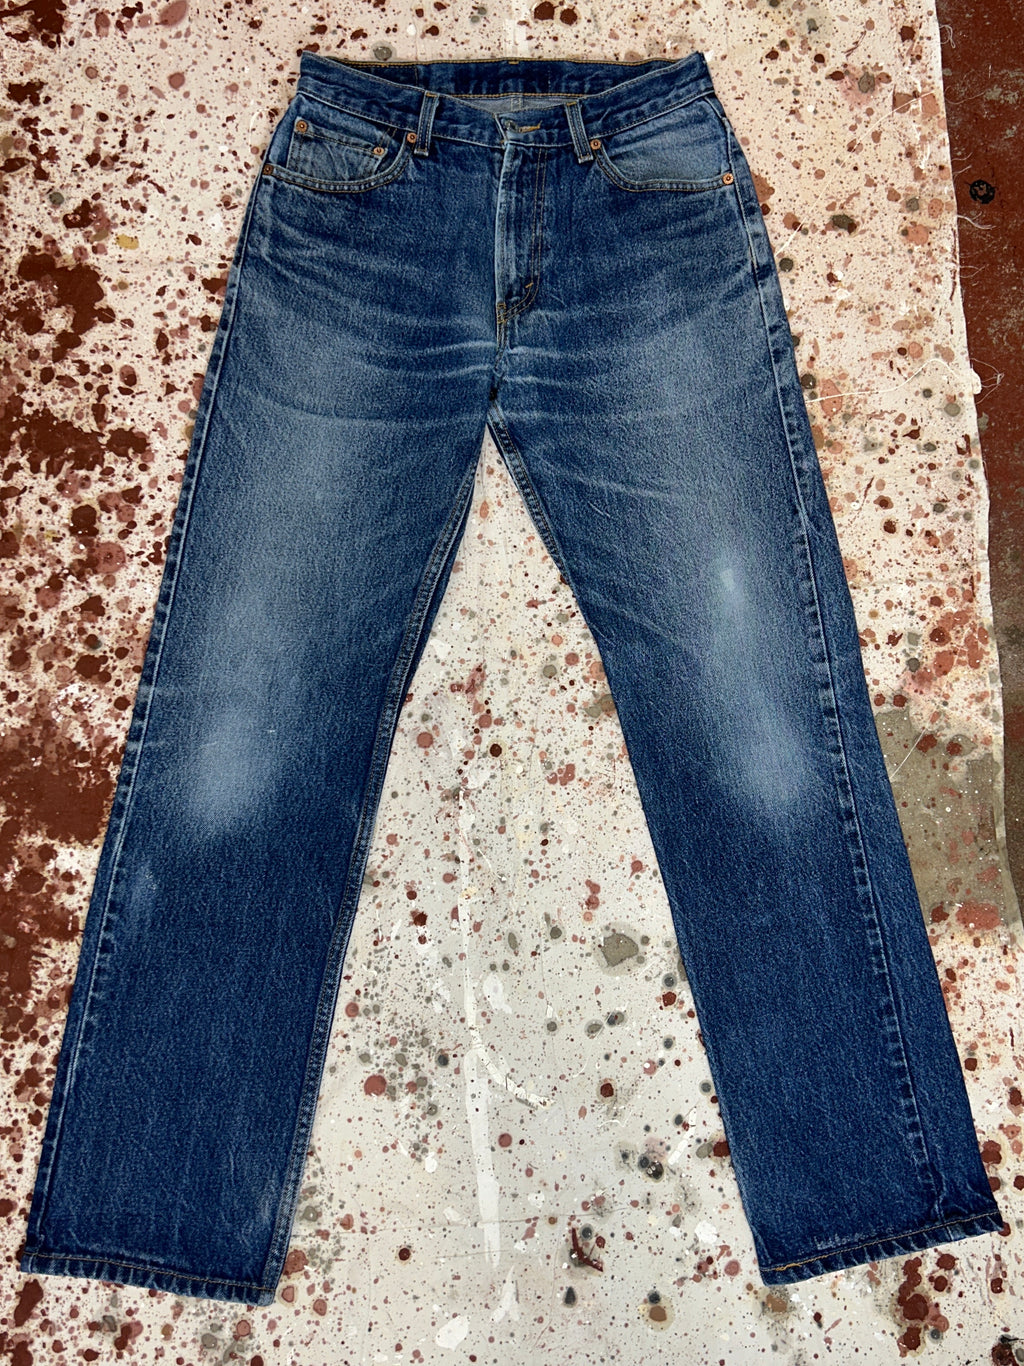 Vintage Levi's 505 Super Wash Denim Jeans (JYJ0424-186)